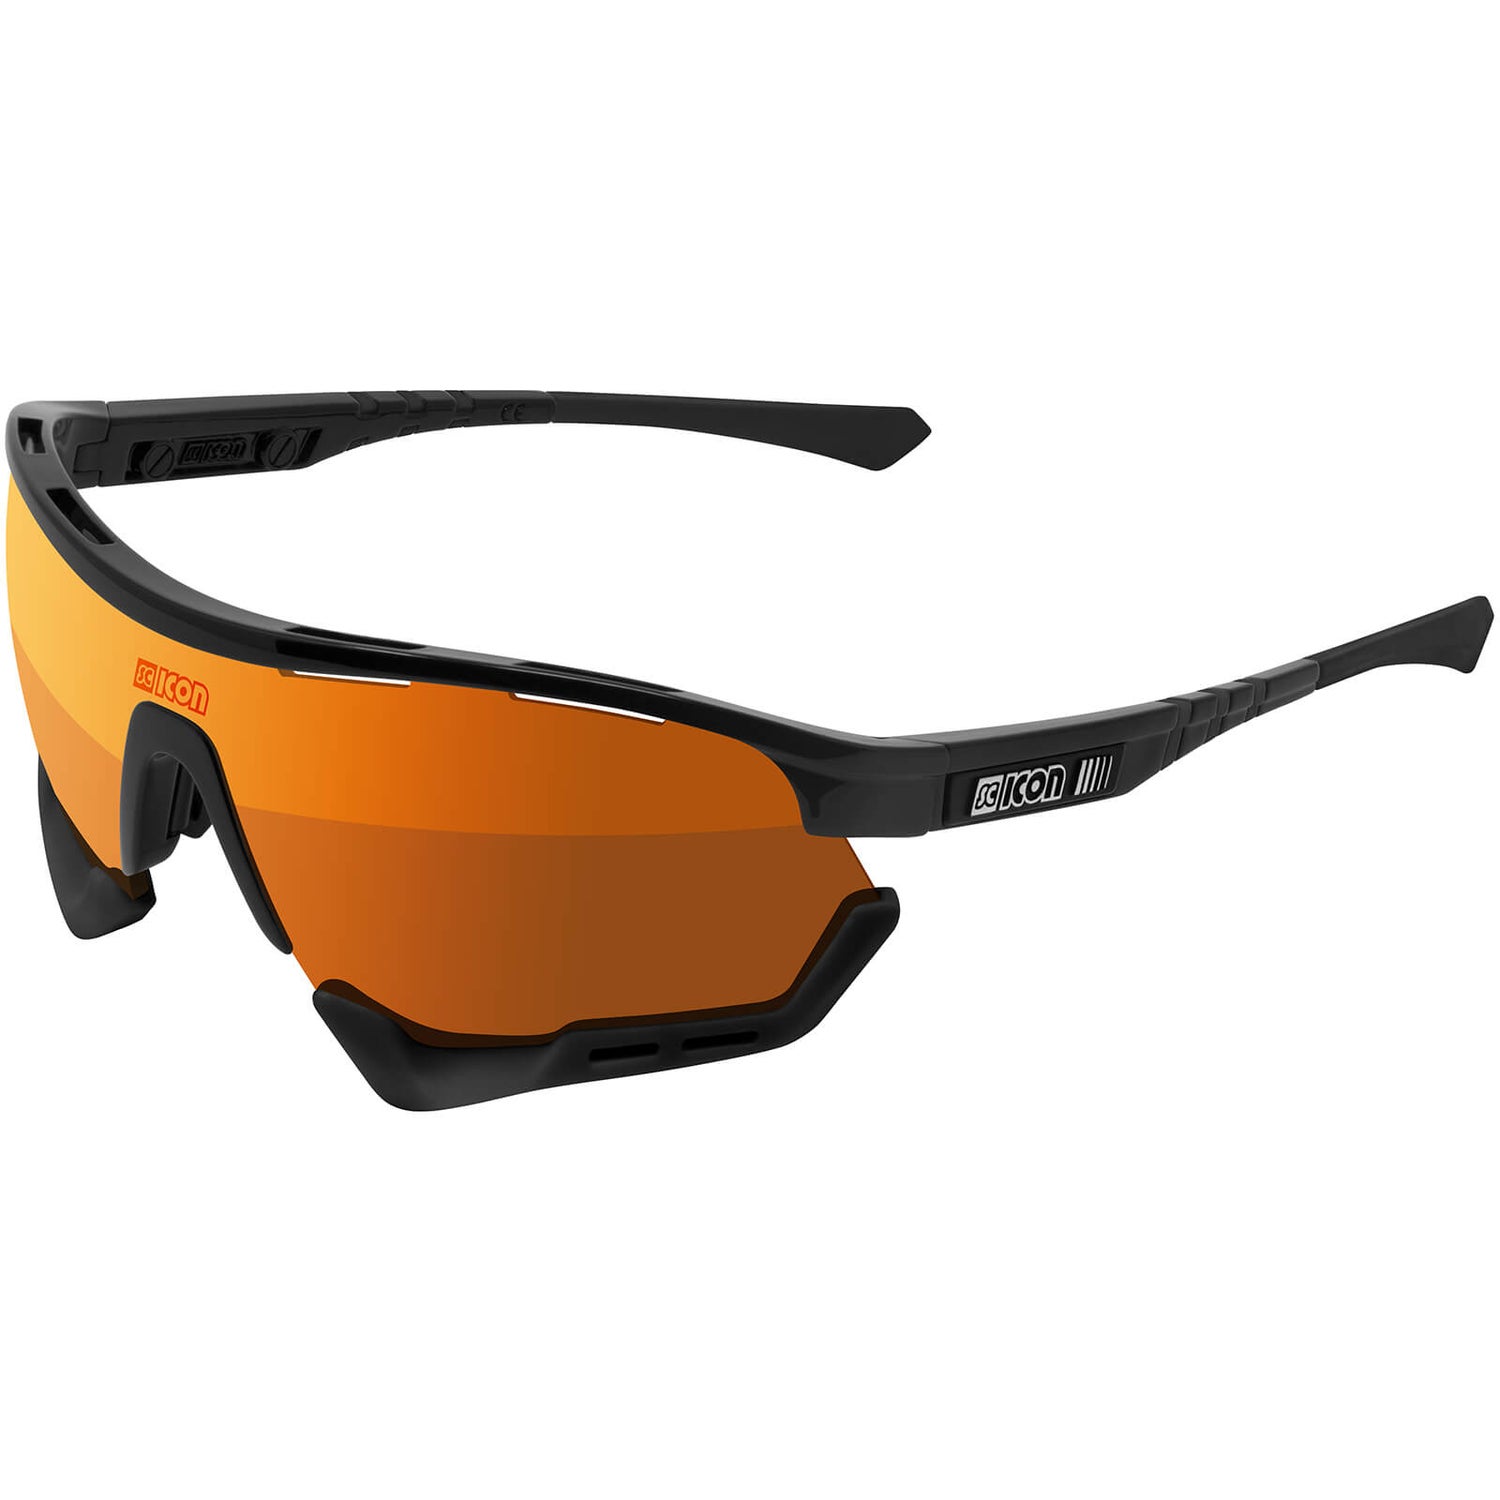 Scicon Aerotech XL Road Sunglasses - Black Gloss